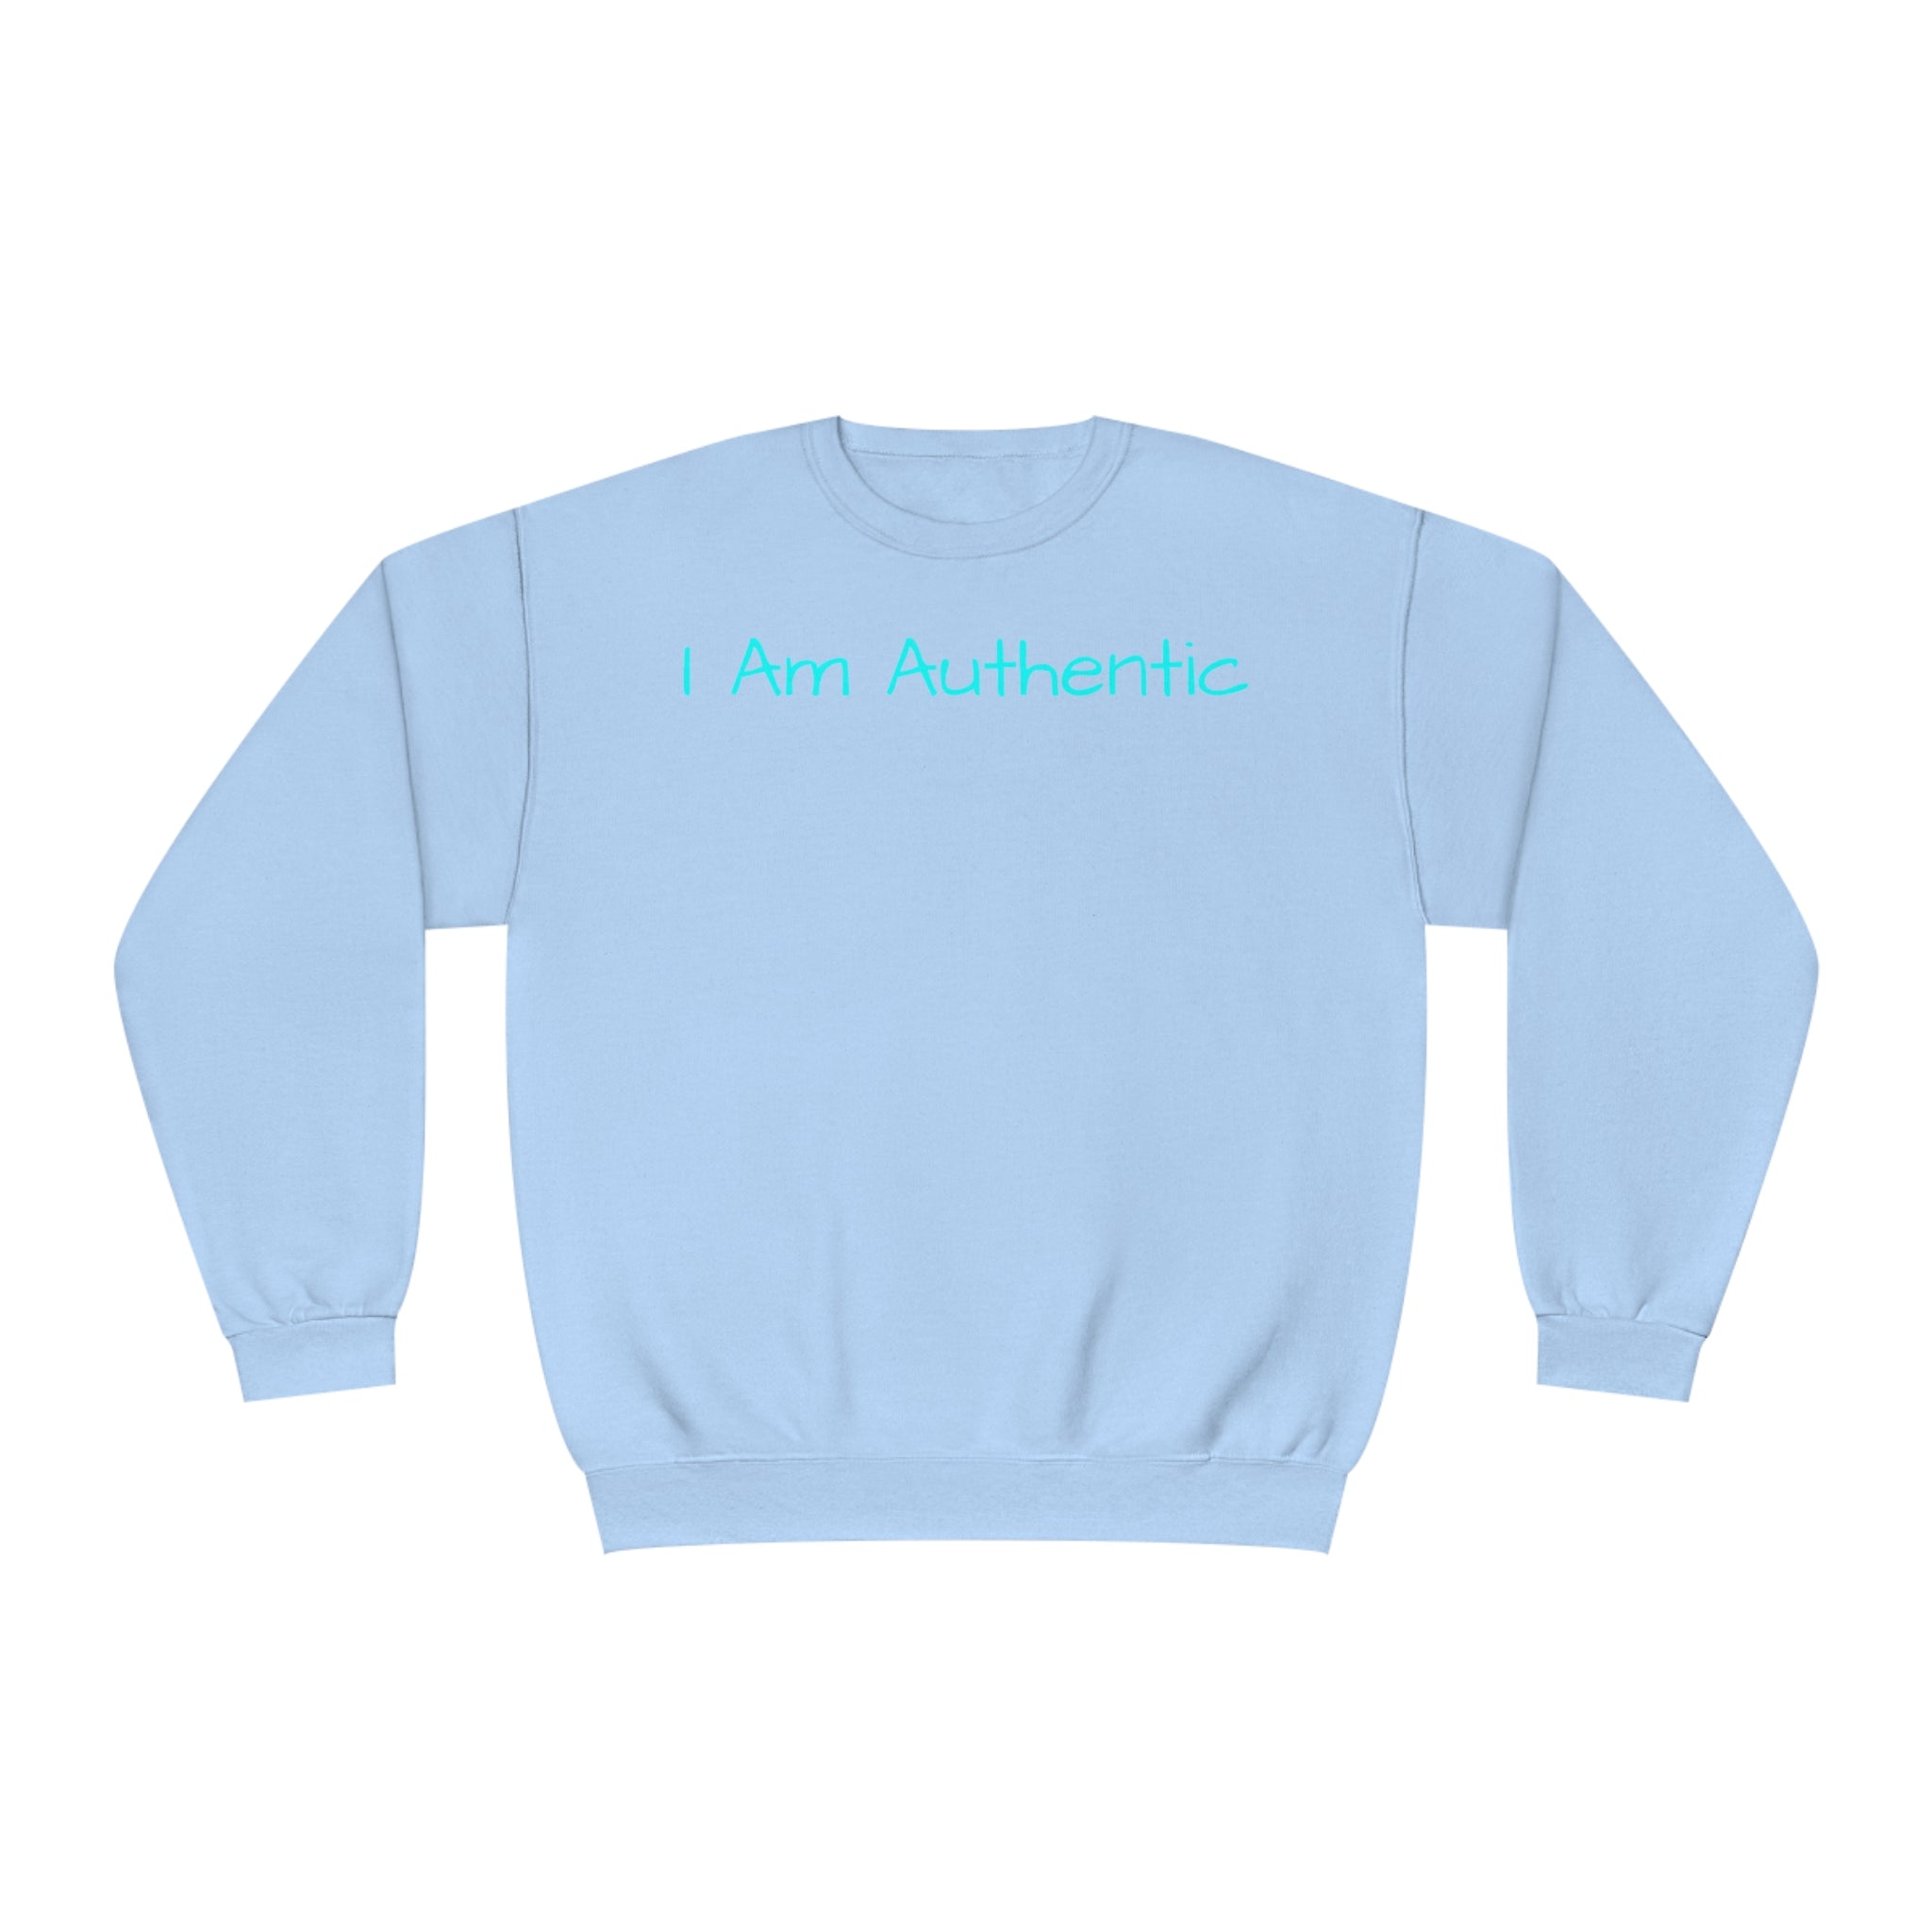 I Am Authentic Fleece Sweatshirt: Comfort & Positivity Sandstone Comfy Sweater Cozy Sweatshirt Crewneck Sweatshirt Fleece Pullover Graphic Sweatshirt Men's Sweatshirt Streatwear Sweatshirt Warm Outerwear Women's Sweatshirt Sweatshirt 10179174511235655538_2048 Printify